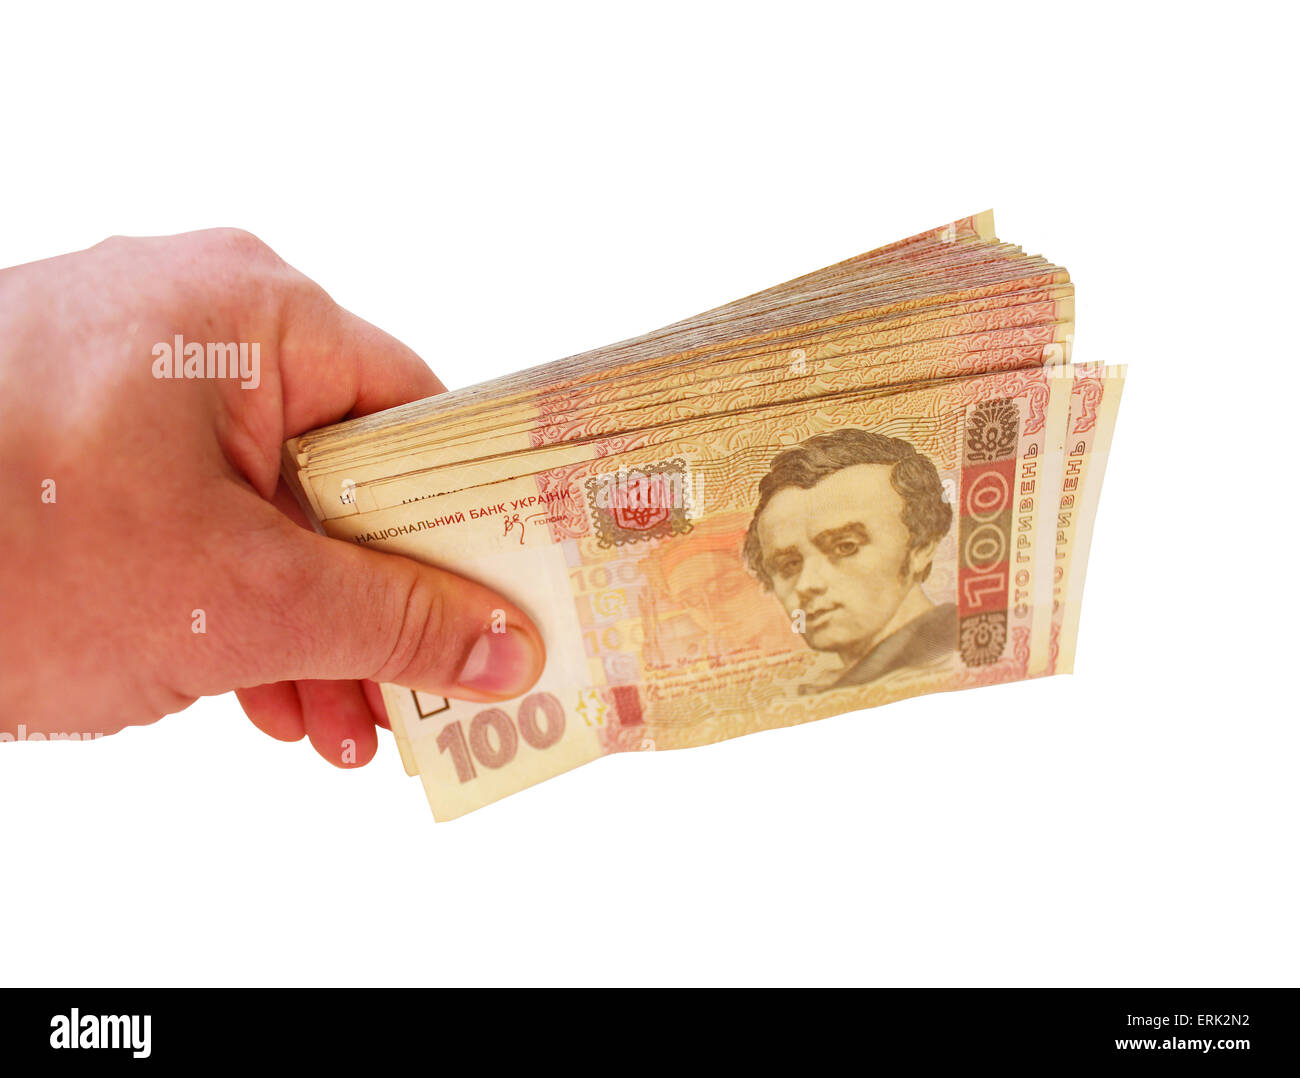 Ukrainische Geld der Wert 100 in der Hand auf dem weißen isoliert Stockfoto